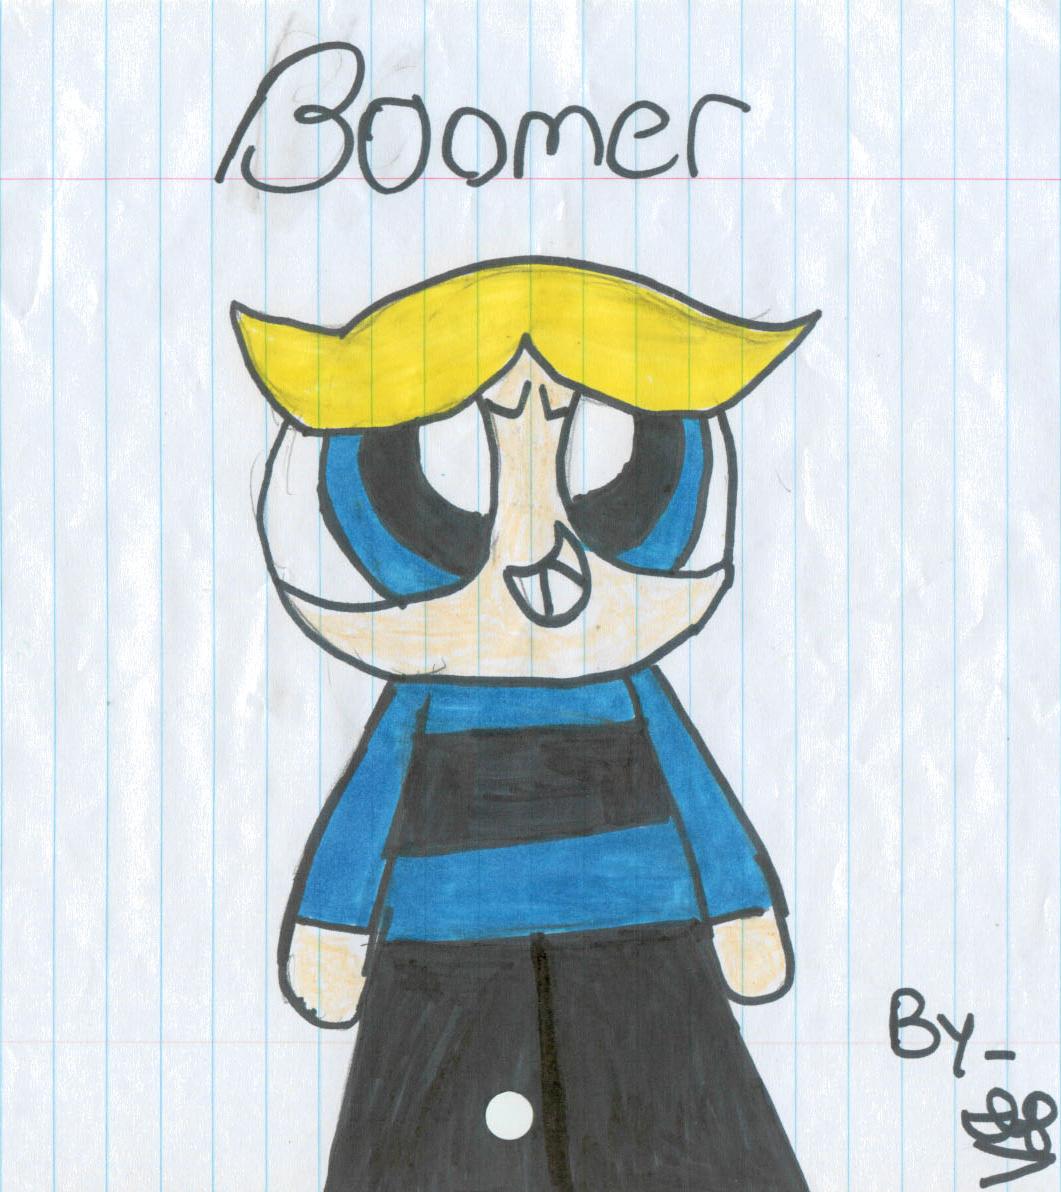 Boomer by SSGoshin4